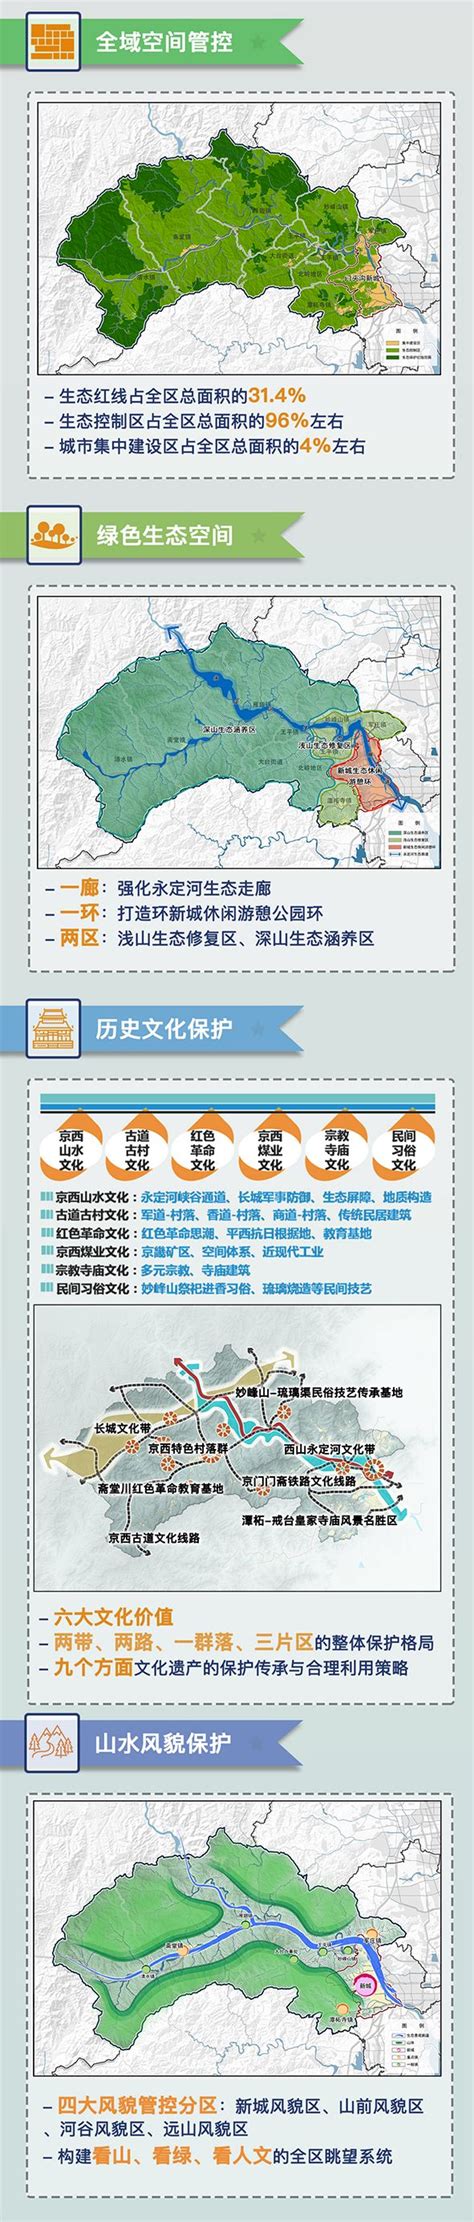 《门头沟分区规划（2017年—2035年）》草案提建议渠道- 北京本地宝